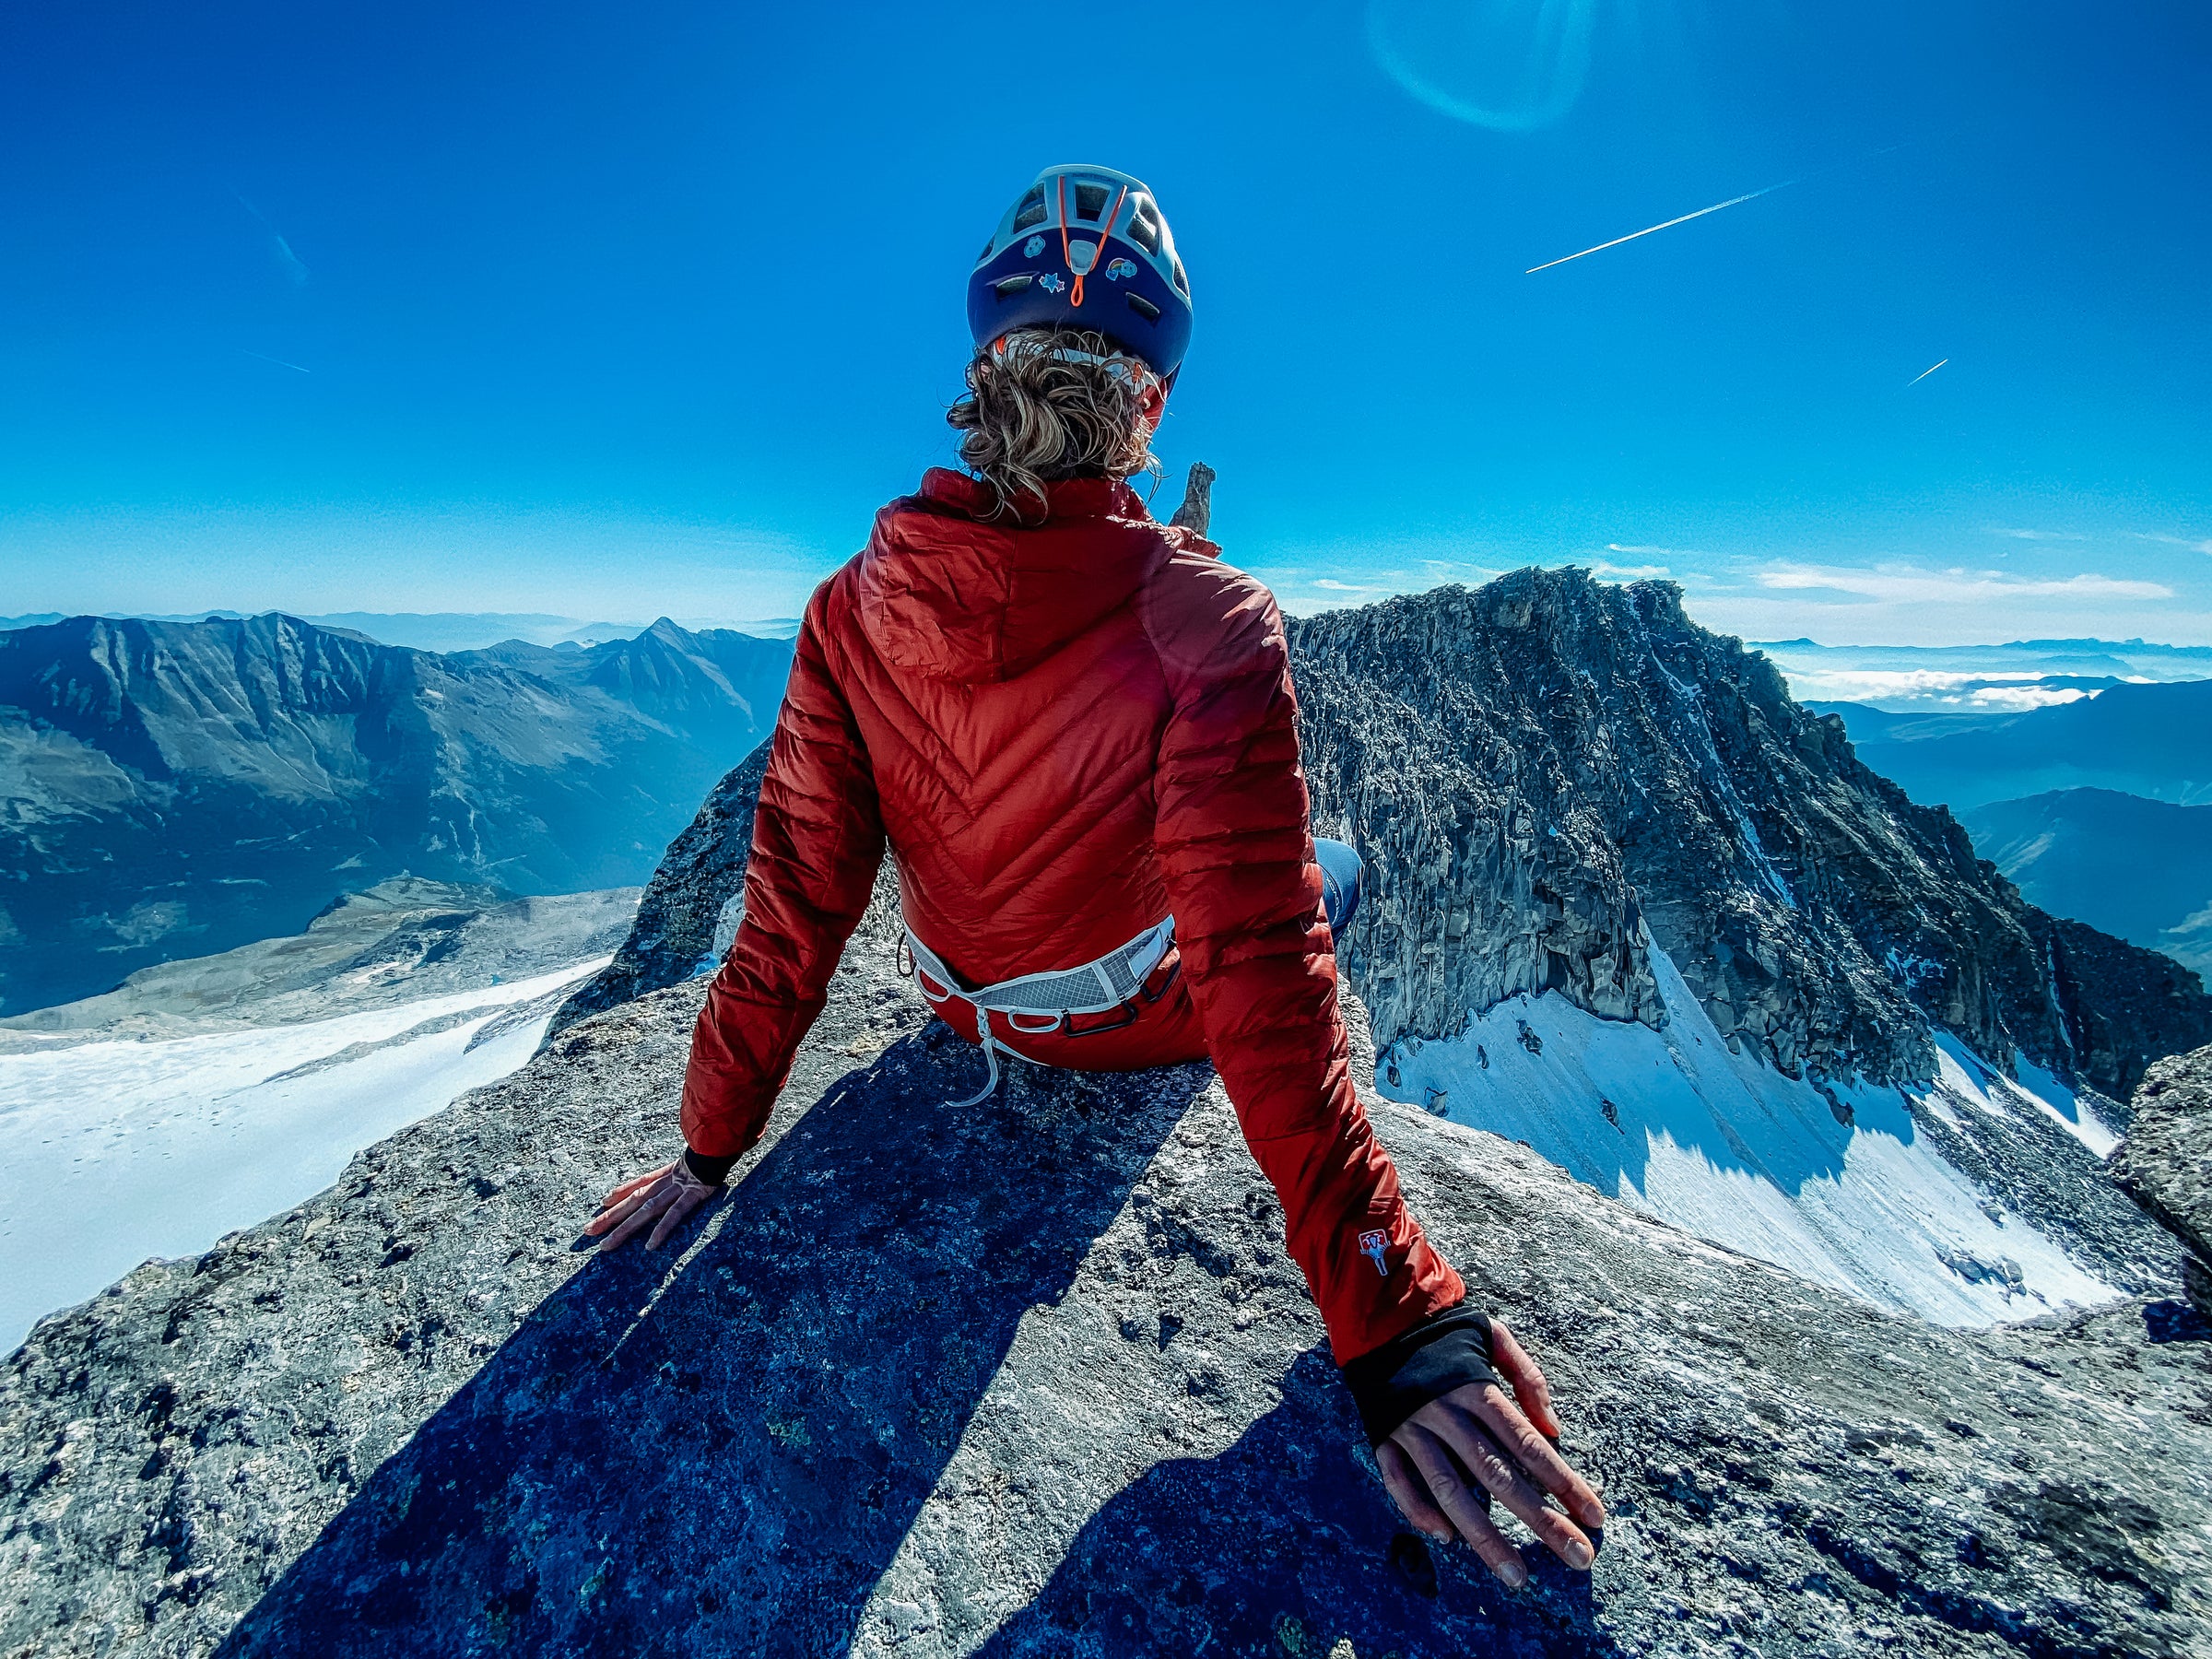 Grüezi bag Faithful DownWool Jacket - DownWool Isolation aus den Alpen